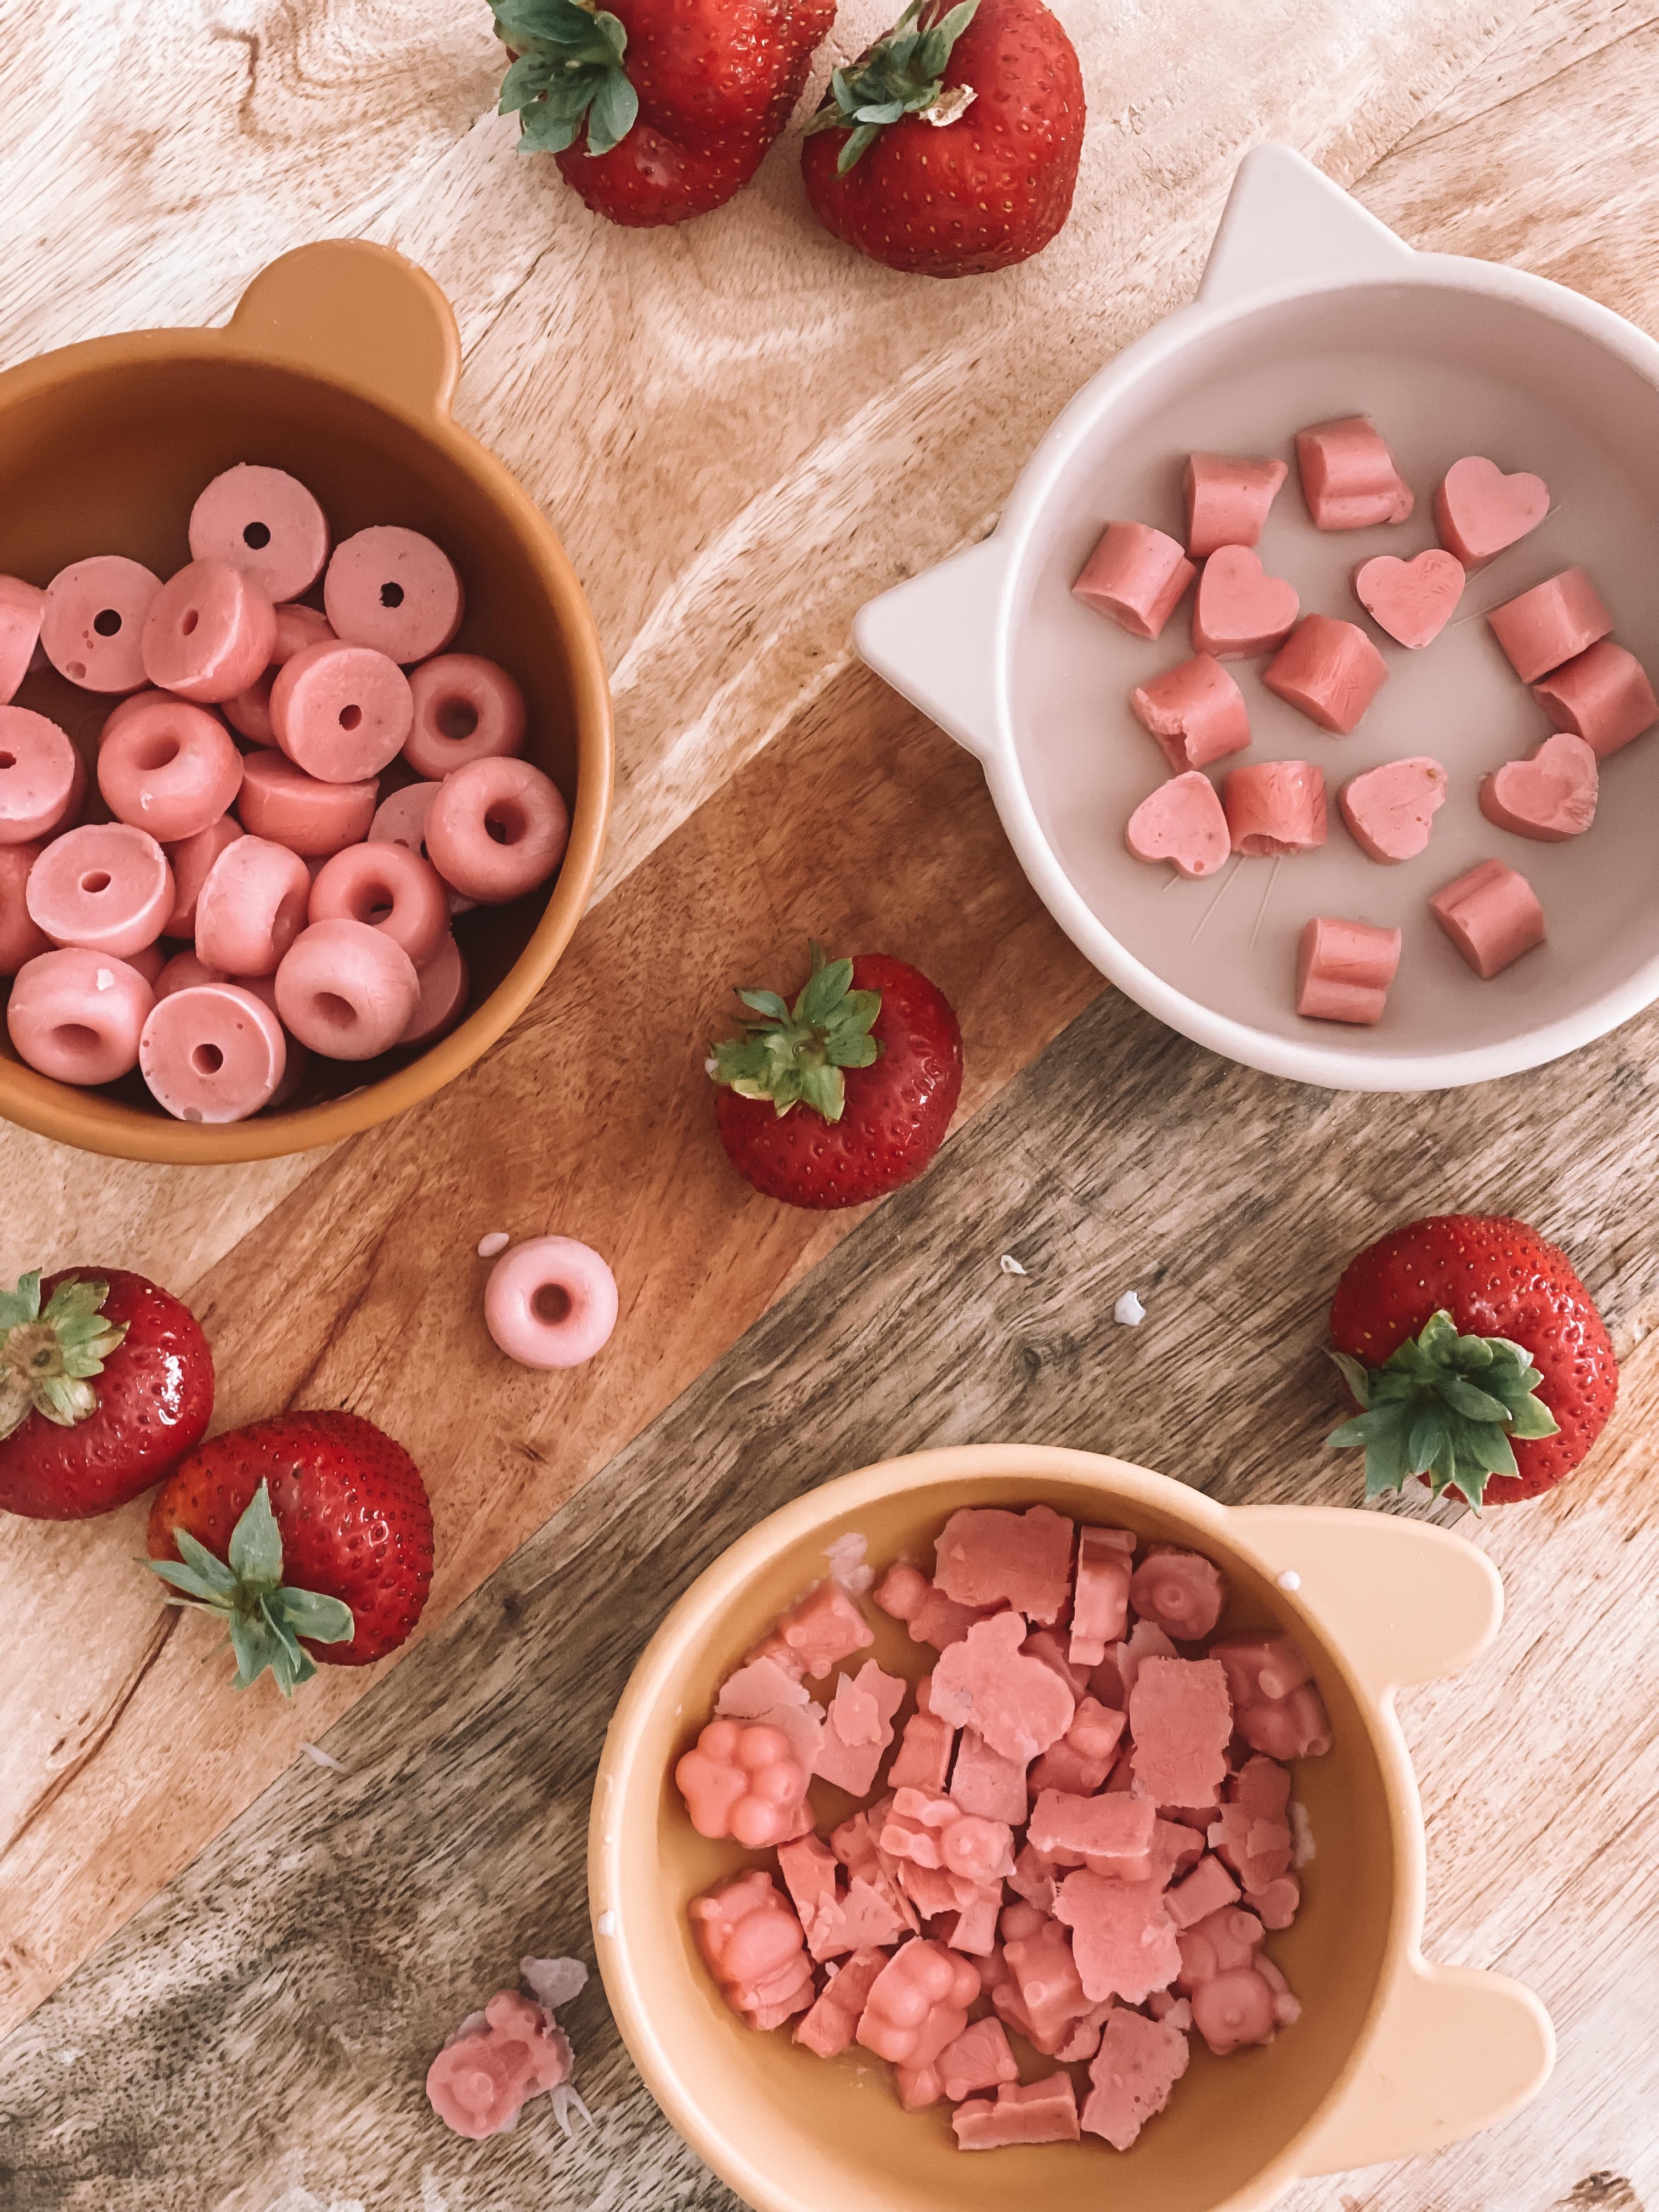 Frozen Yogurt Gums selbst machen. Mit Erdbeeren aus dem Garten. Kein Zucker. Kein Plastik. #grünerleben #diy #couchstyle